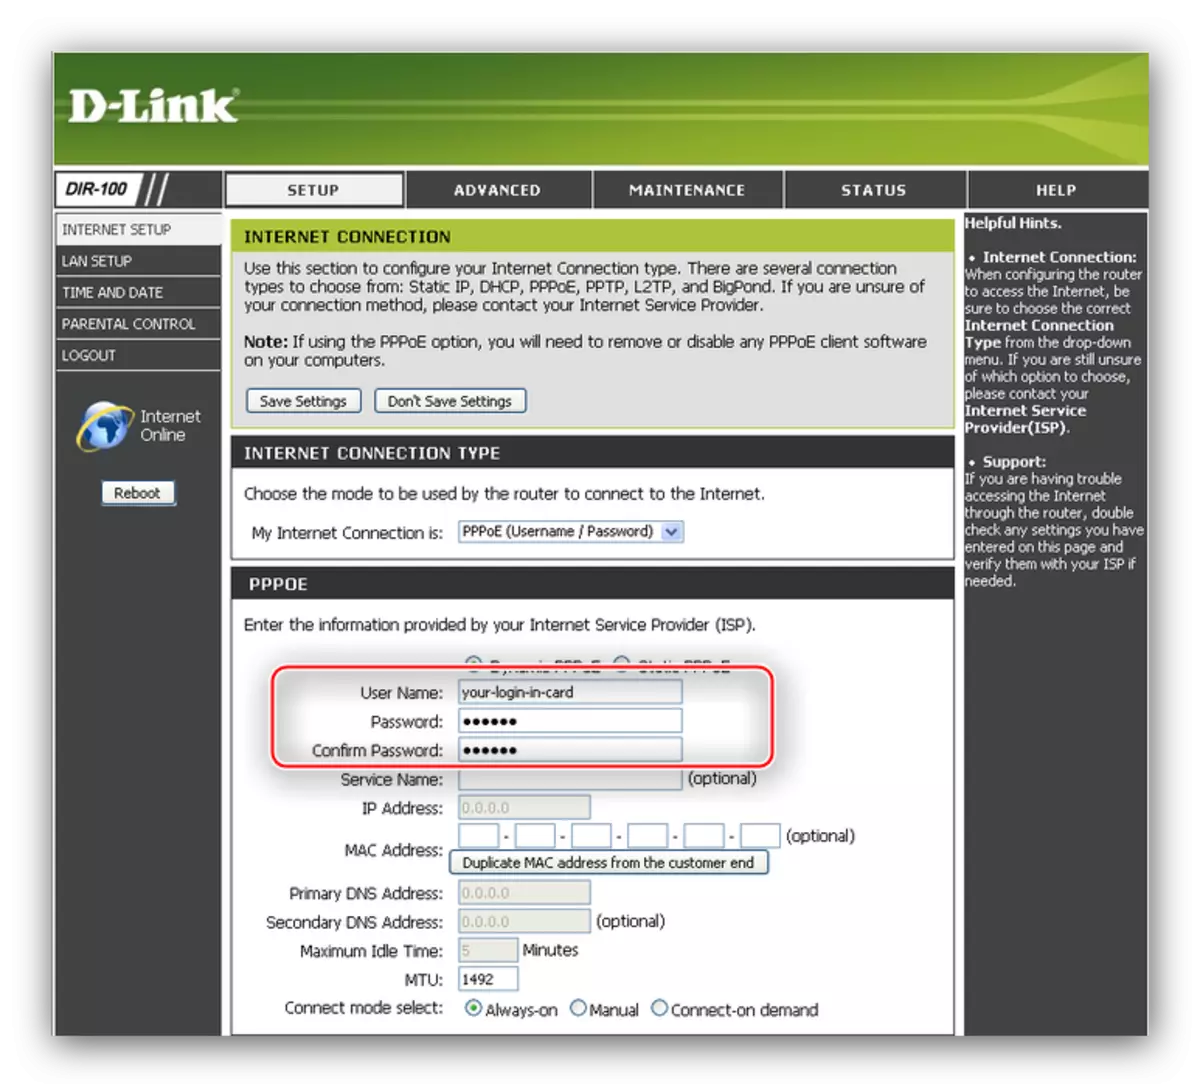 Introduïu connexions PPPoe d'inici de sessió i contrasenya per configurar el router D-LINK LINK 100